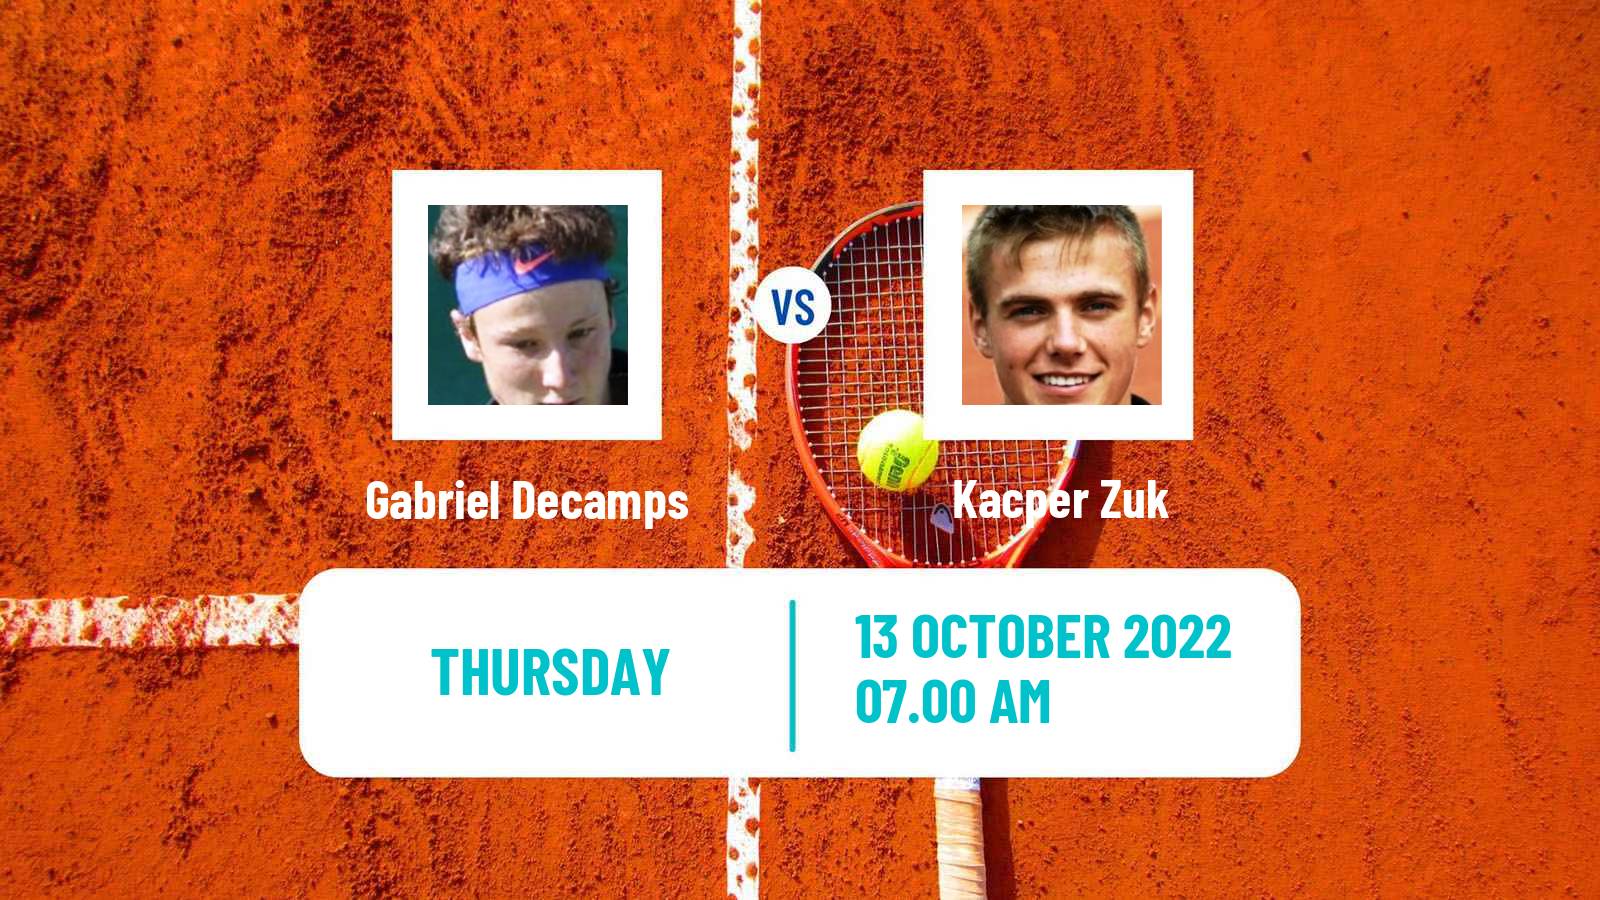 Tennis ATP Challenger Gabriel Decamps - Kacper Zuk